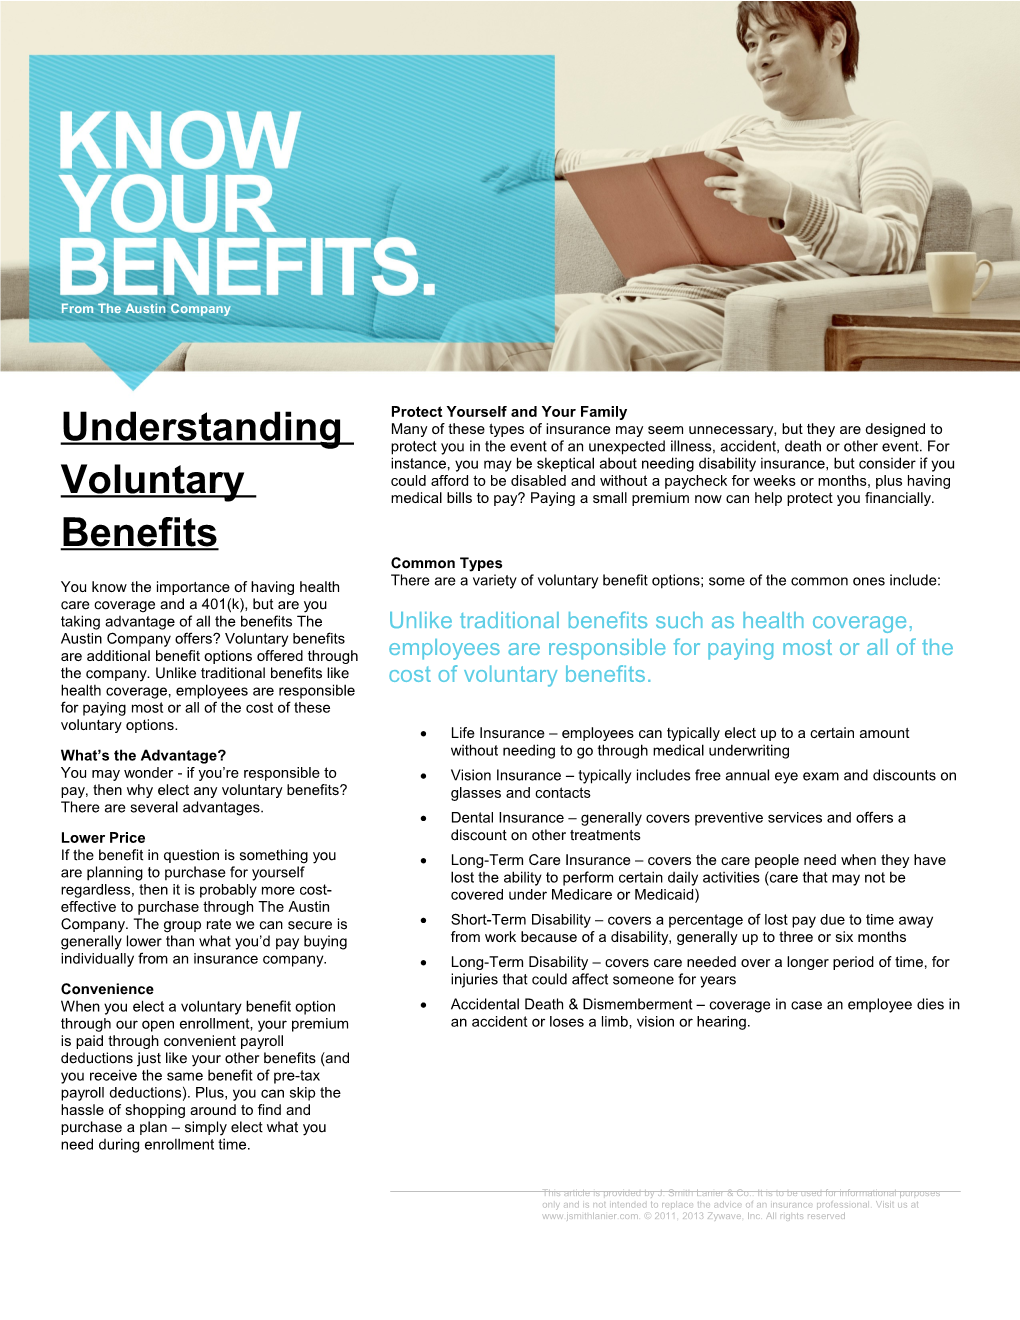 Understanding Voluntary Benefits